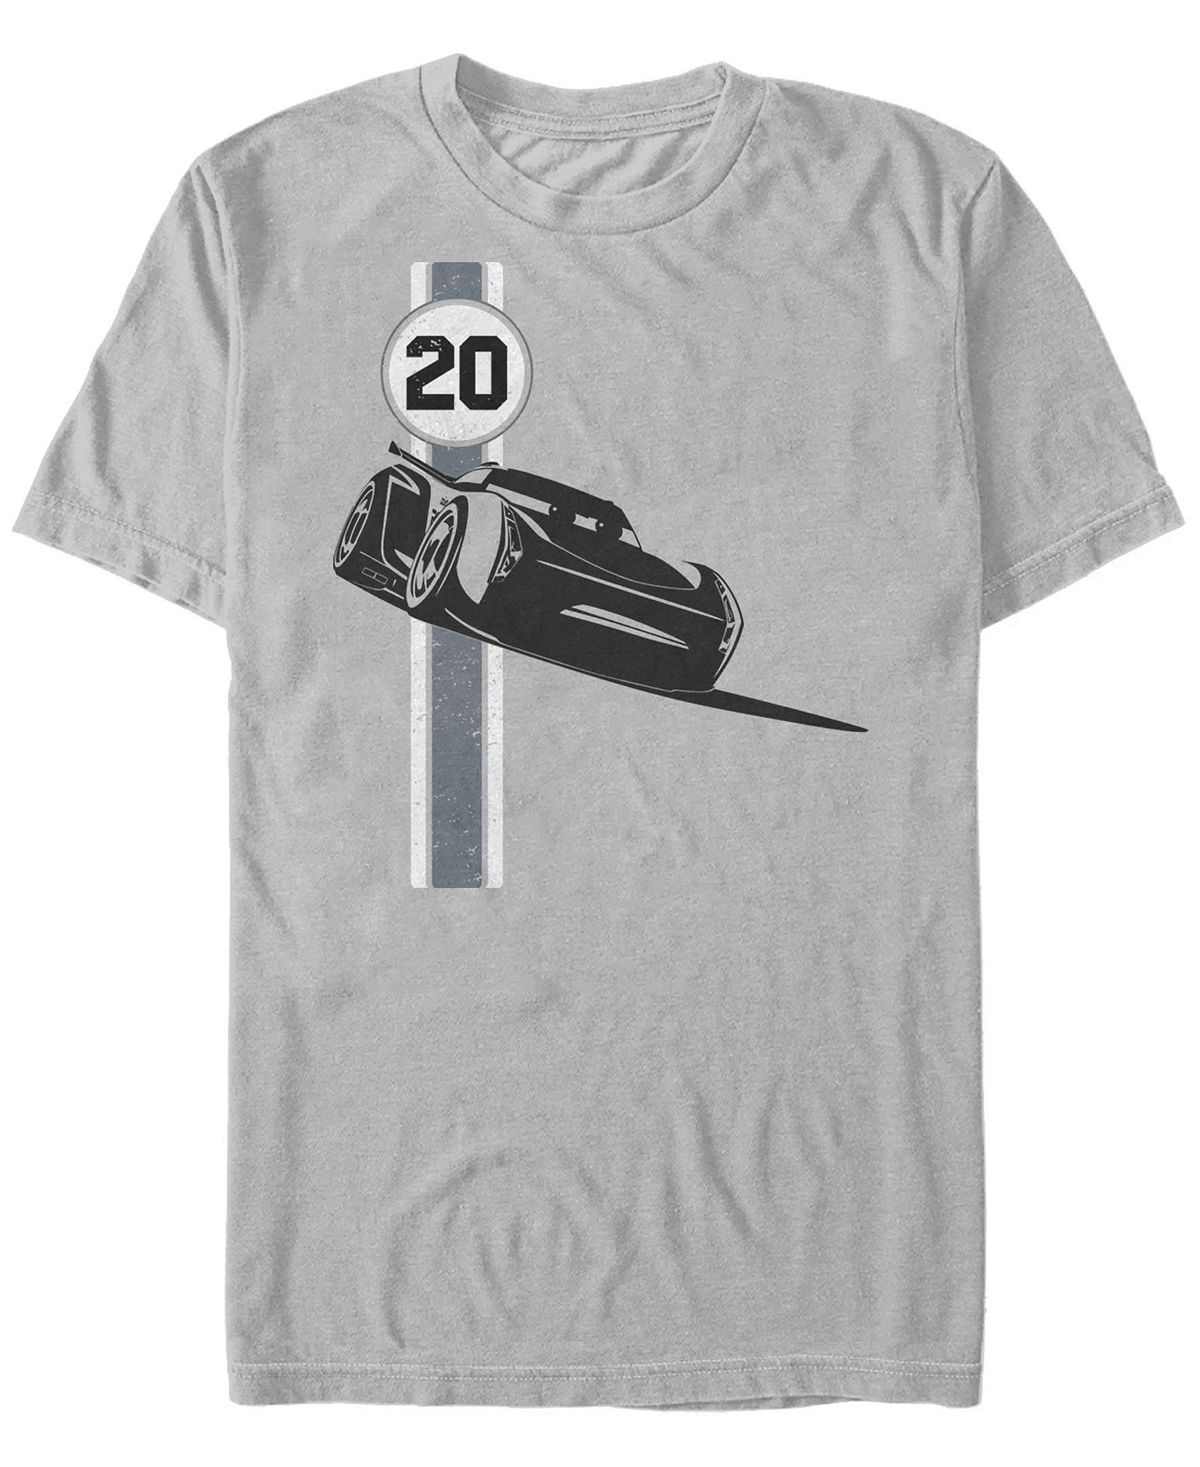 Мужская футболка racing storm с круглым вырезом и короткими рукавами Fifth Sun, серебряный